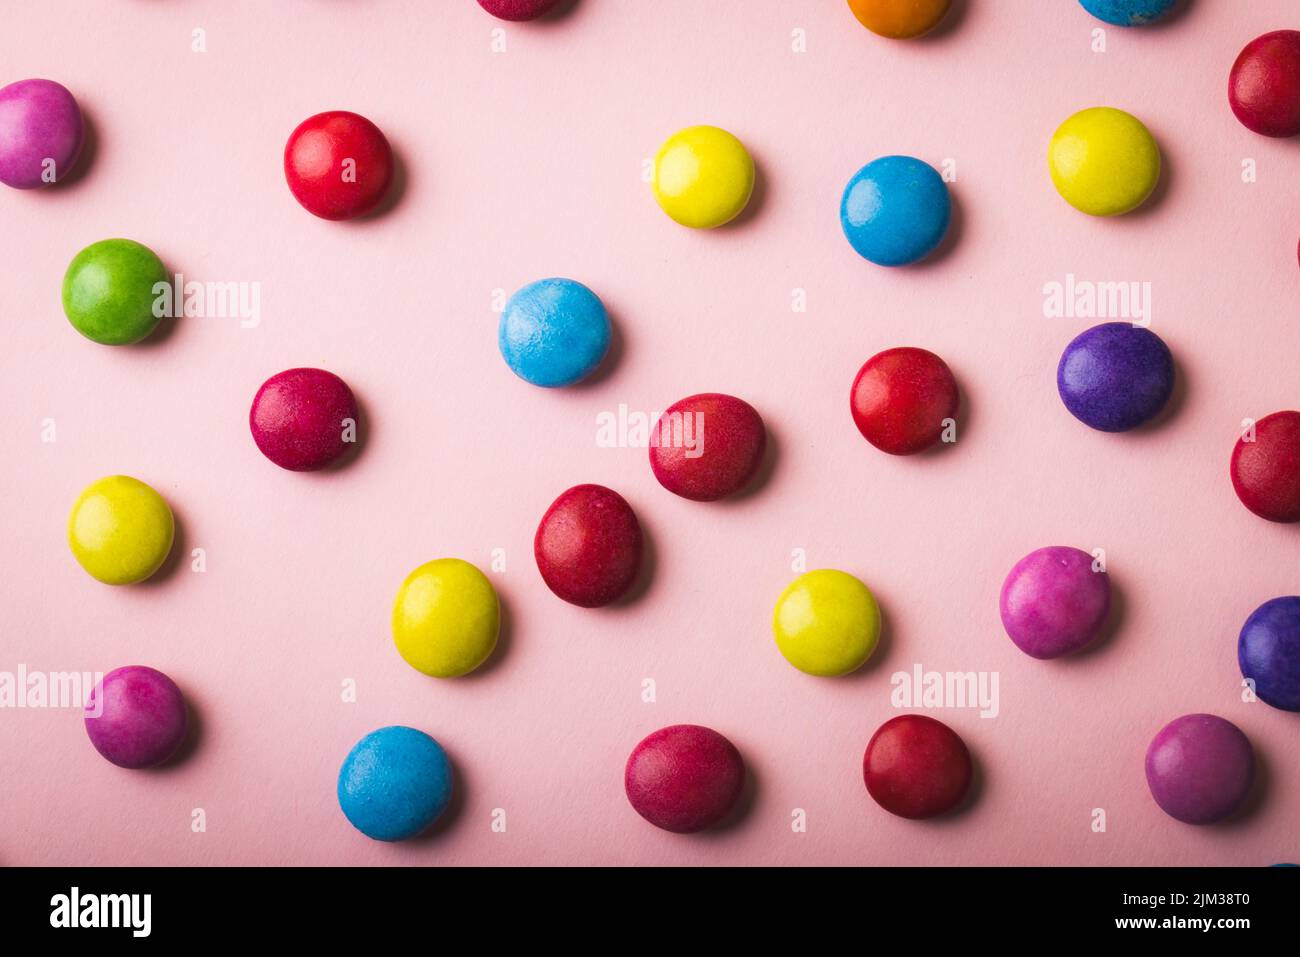 Direttamente sopra la vista di caramelle al cioccolato multicolore sparse su sfondo rosa Foto Stock